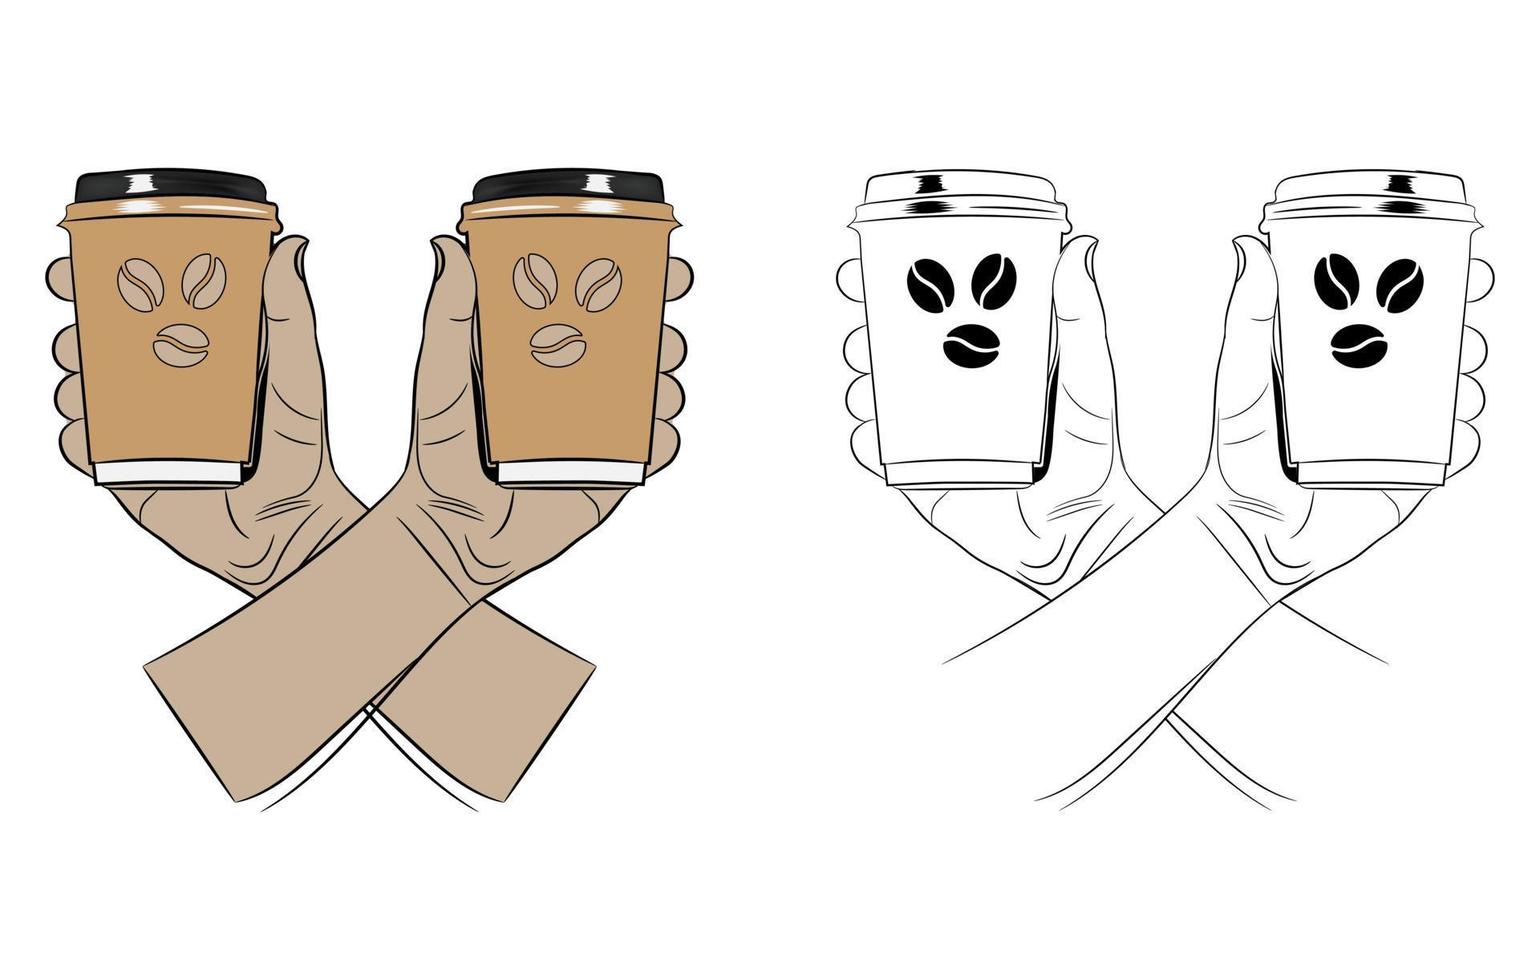 twee handen Holding koffie kopjes, koffie kop vector illustratie, een lijn tekening hand- Holding mok met koffie